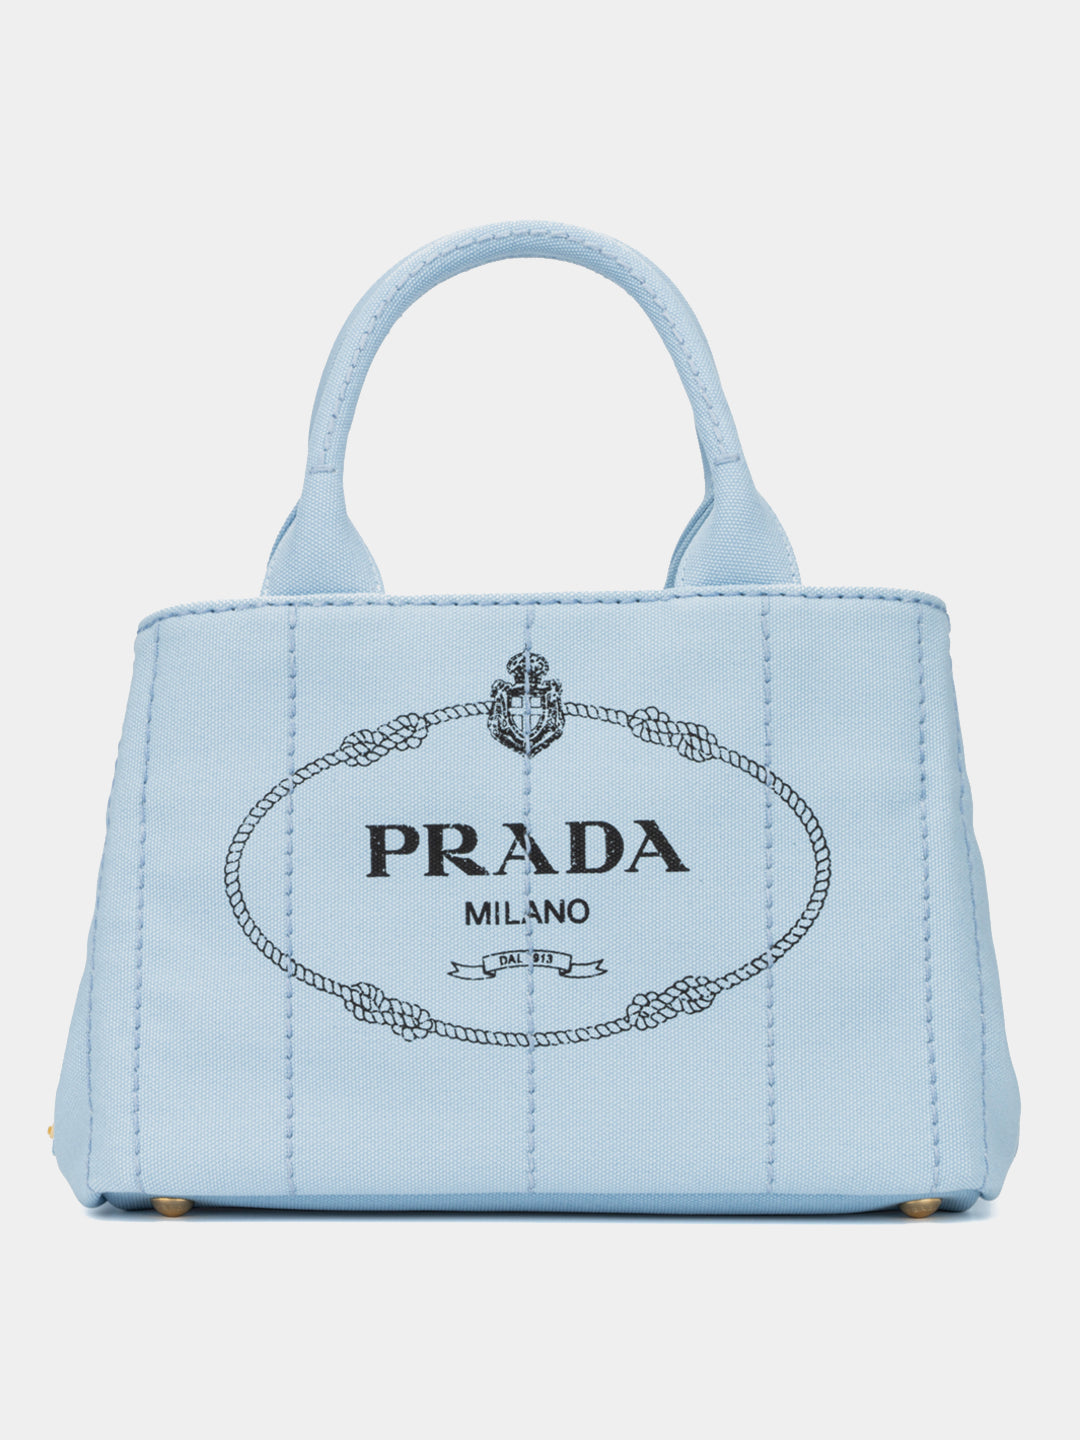 Prada, Bags, Prada Milano Dal 913 Hobo Bag